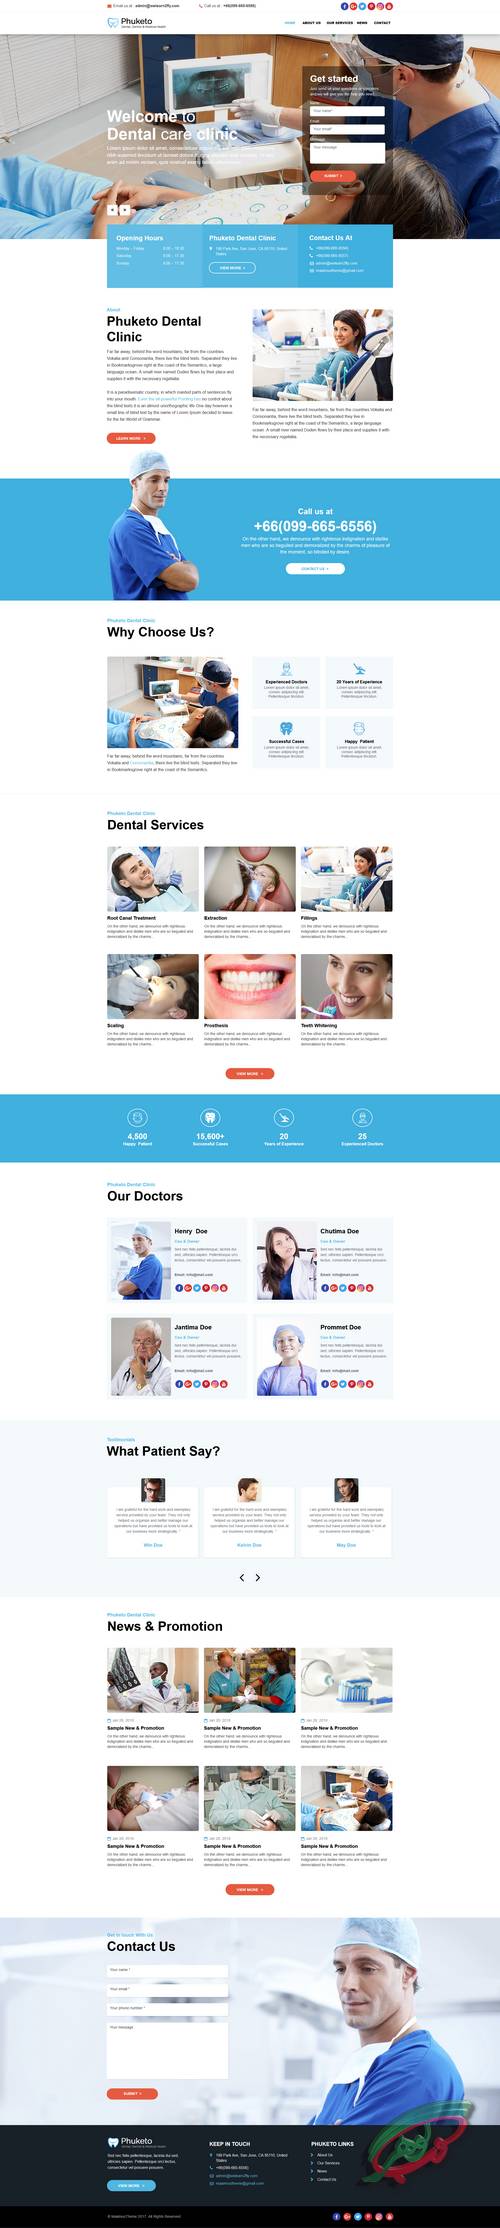 نمونه سایت های کلینیک دندانپزشکی در وب گوهر با طراحی زیبا